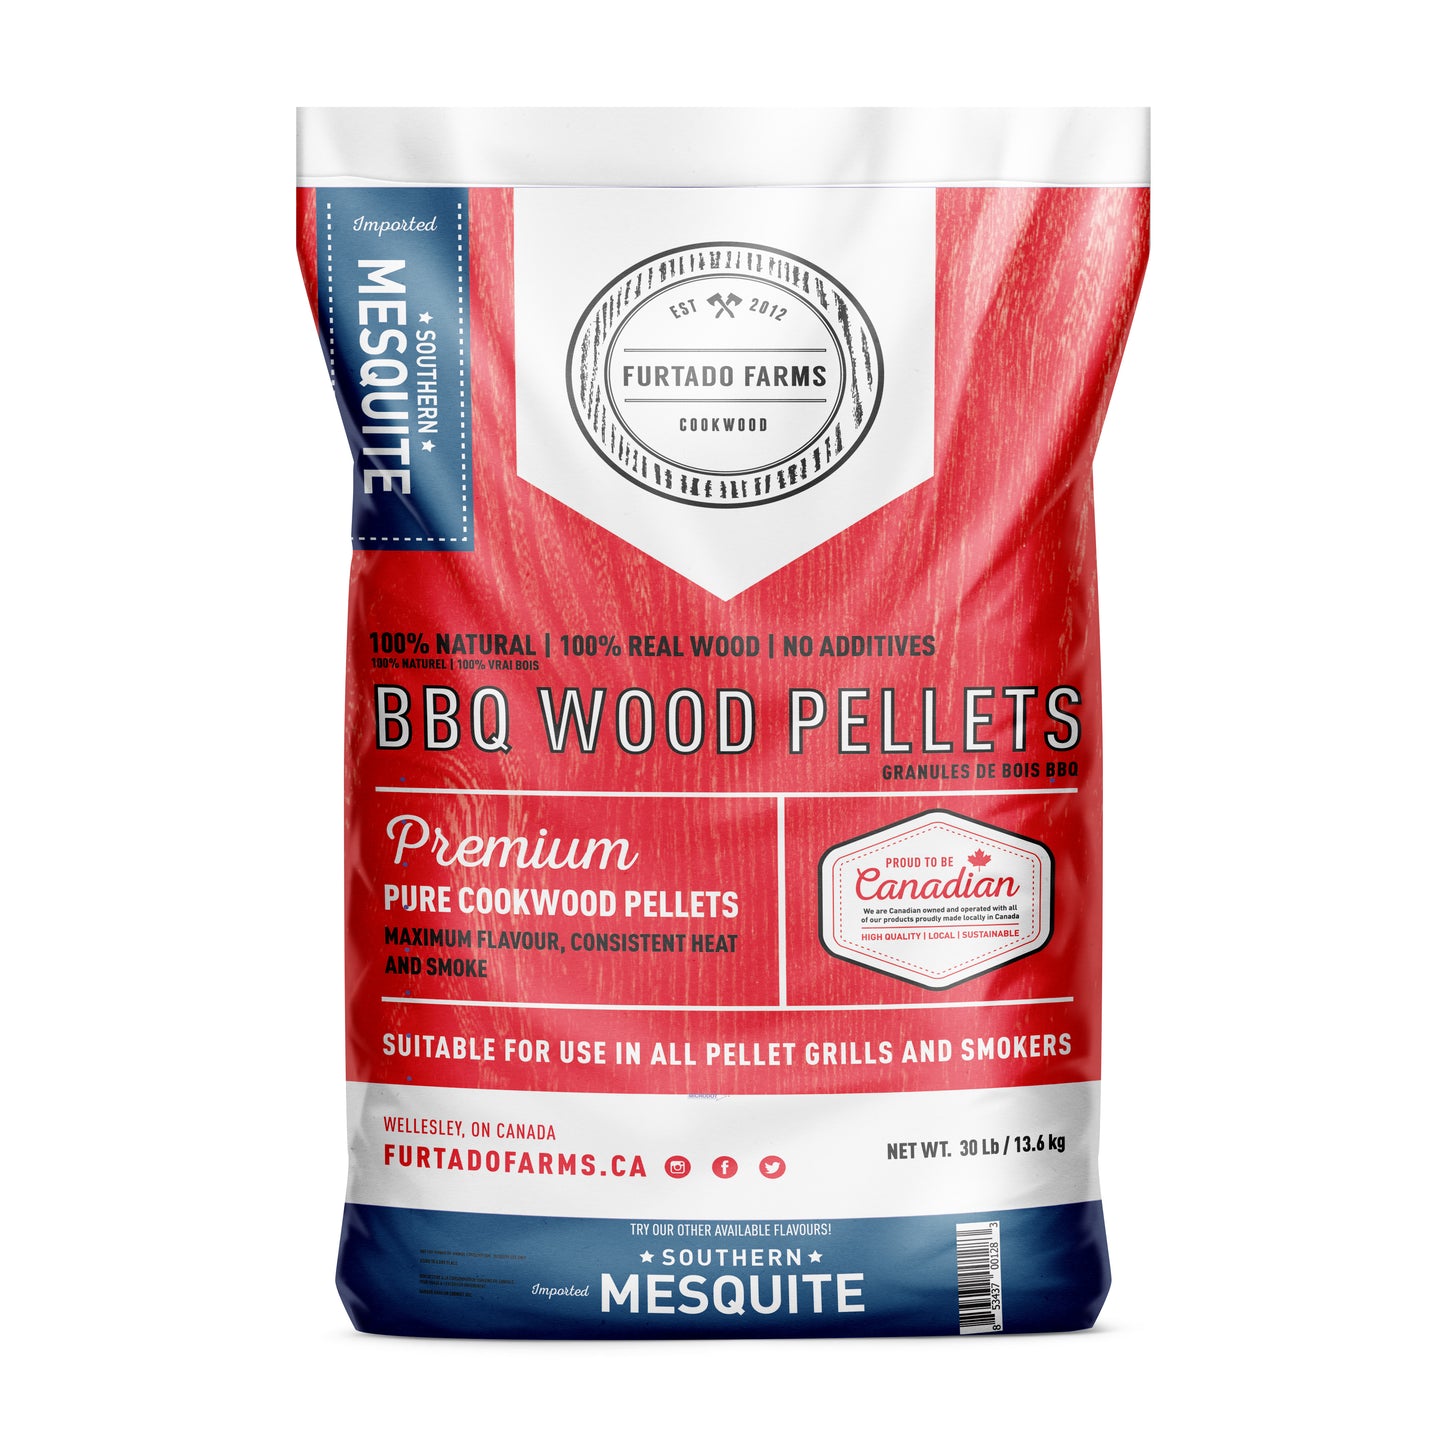 BBQ Wood Pellets - Mesquite